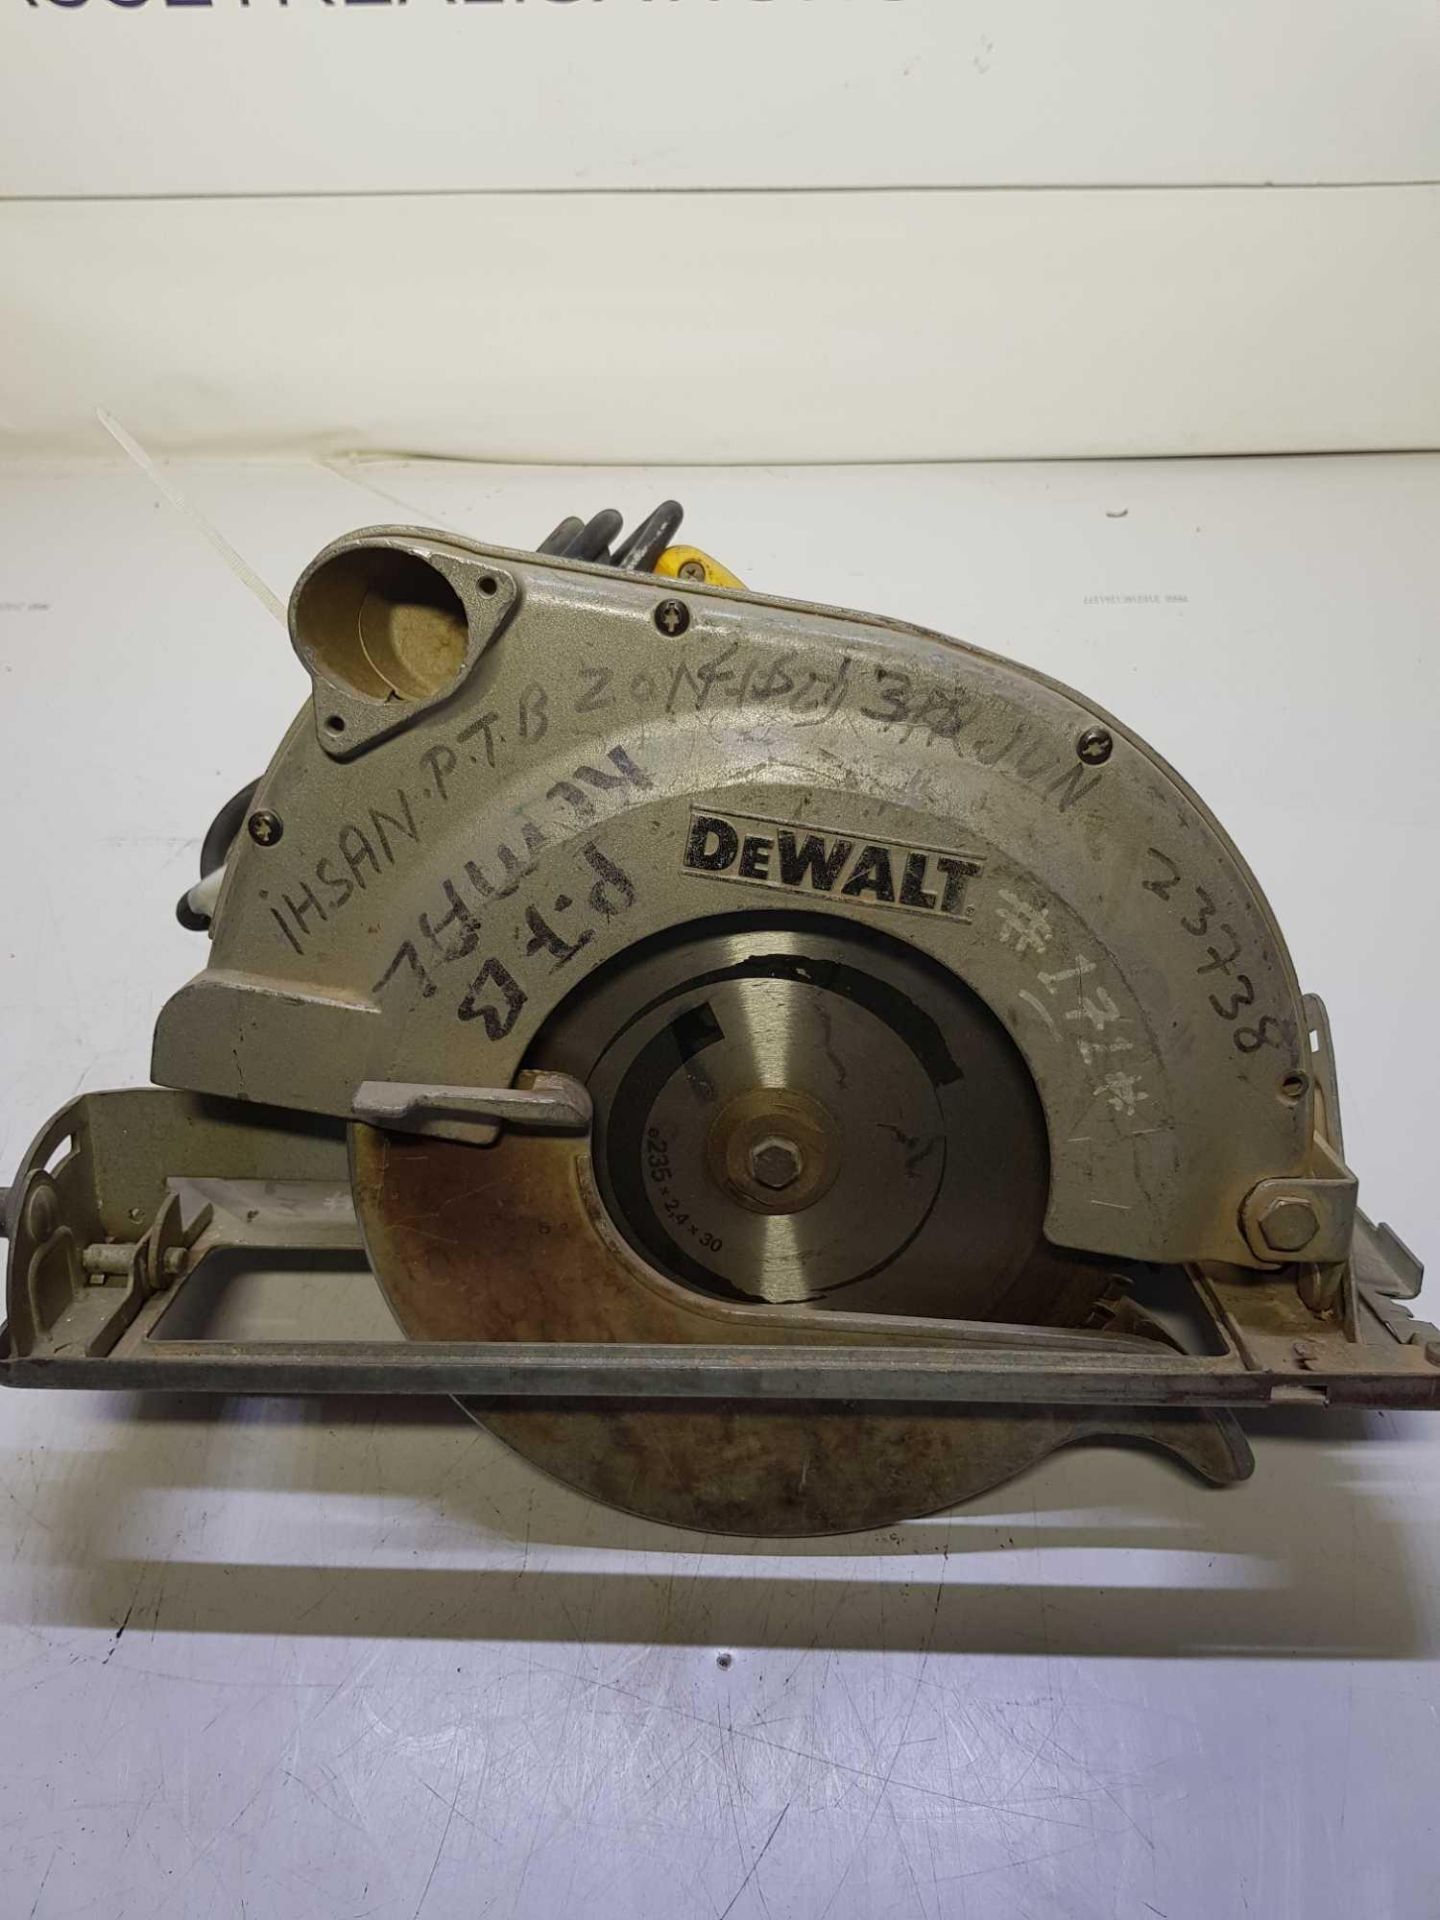 Dewault 110v circular saw